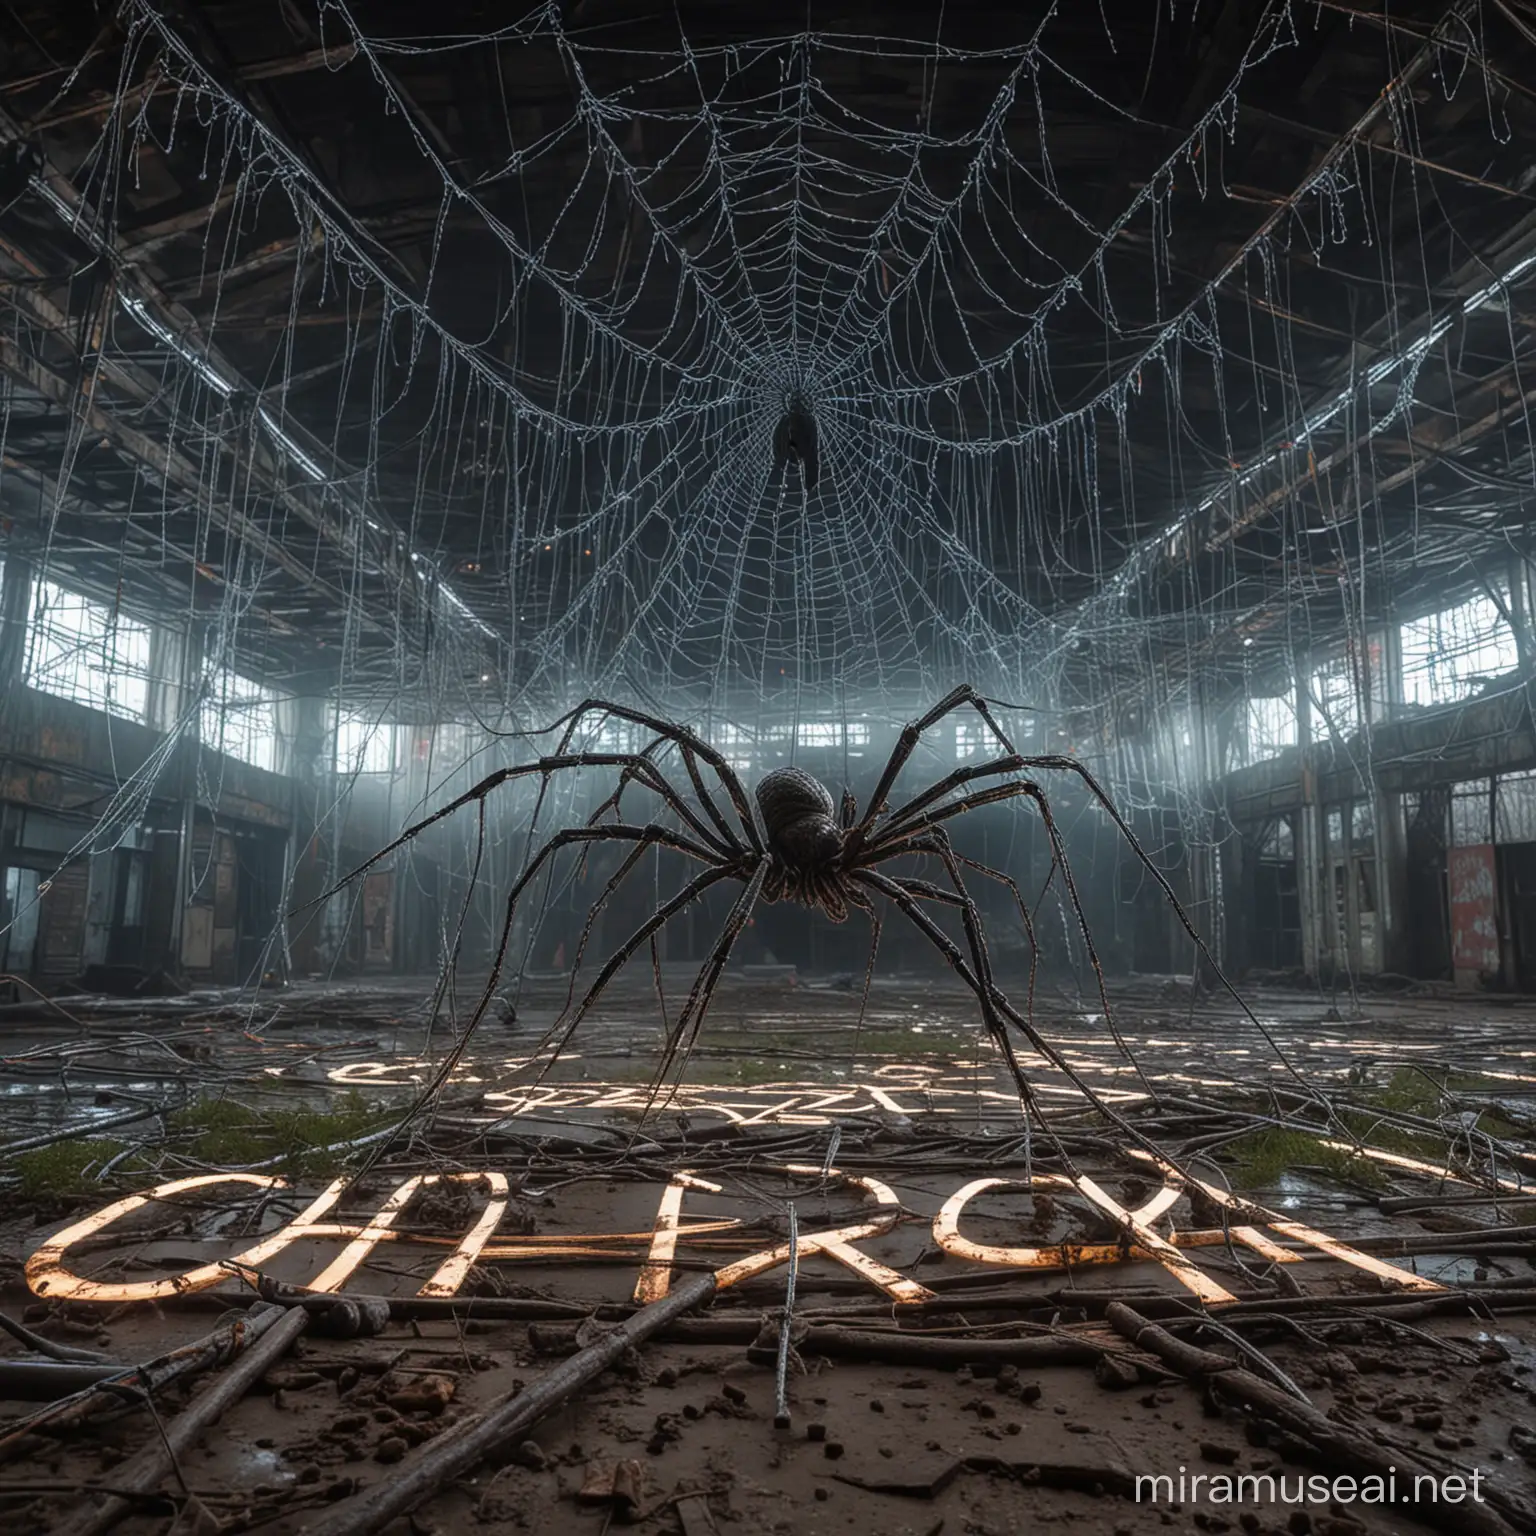 гигантский паук крупным планом, плетёт неоновую паутину, в паутине запутался человек, на фоне кибер-будущее и пост апокалипсис, место Чернобыль, возле надписи город Припять
